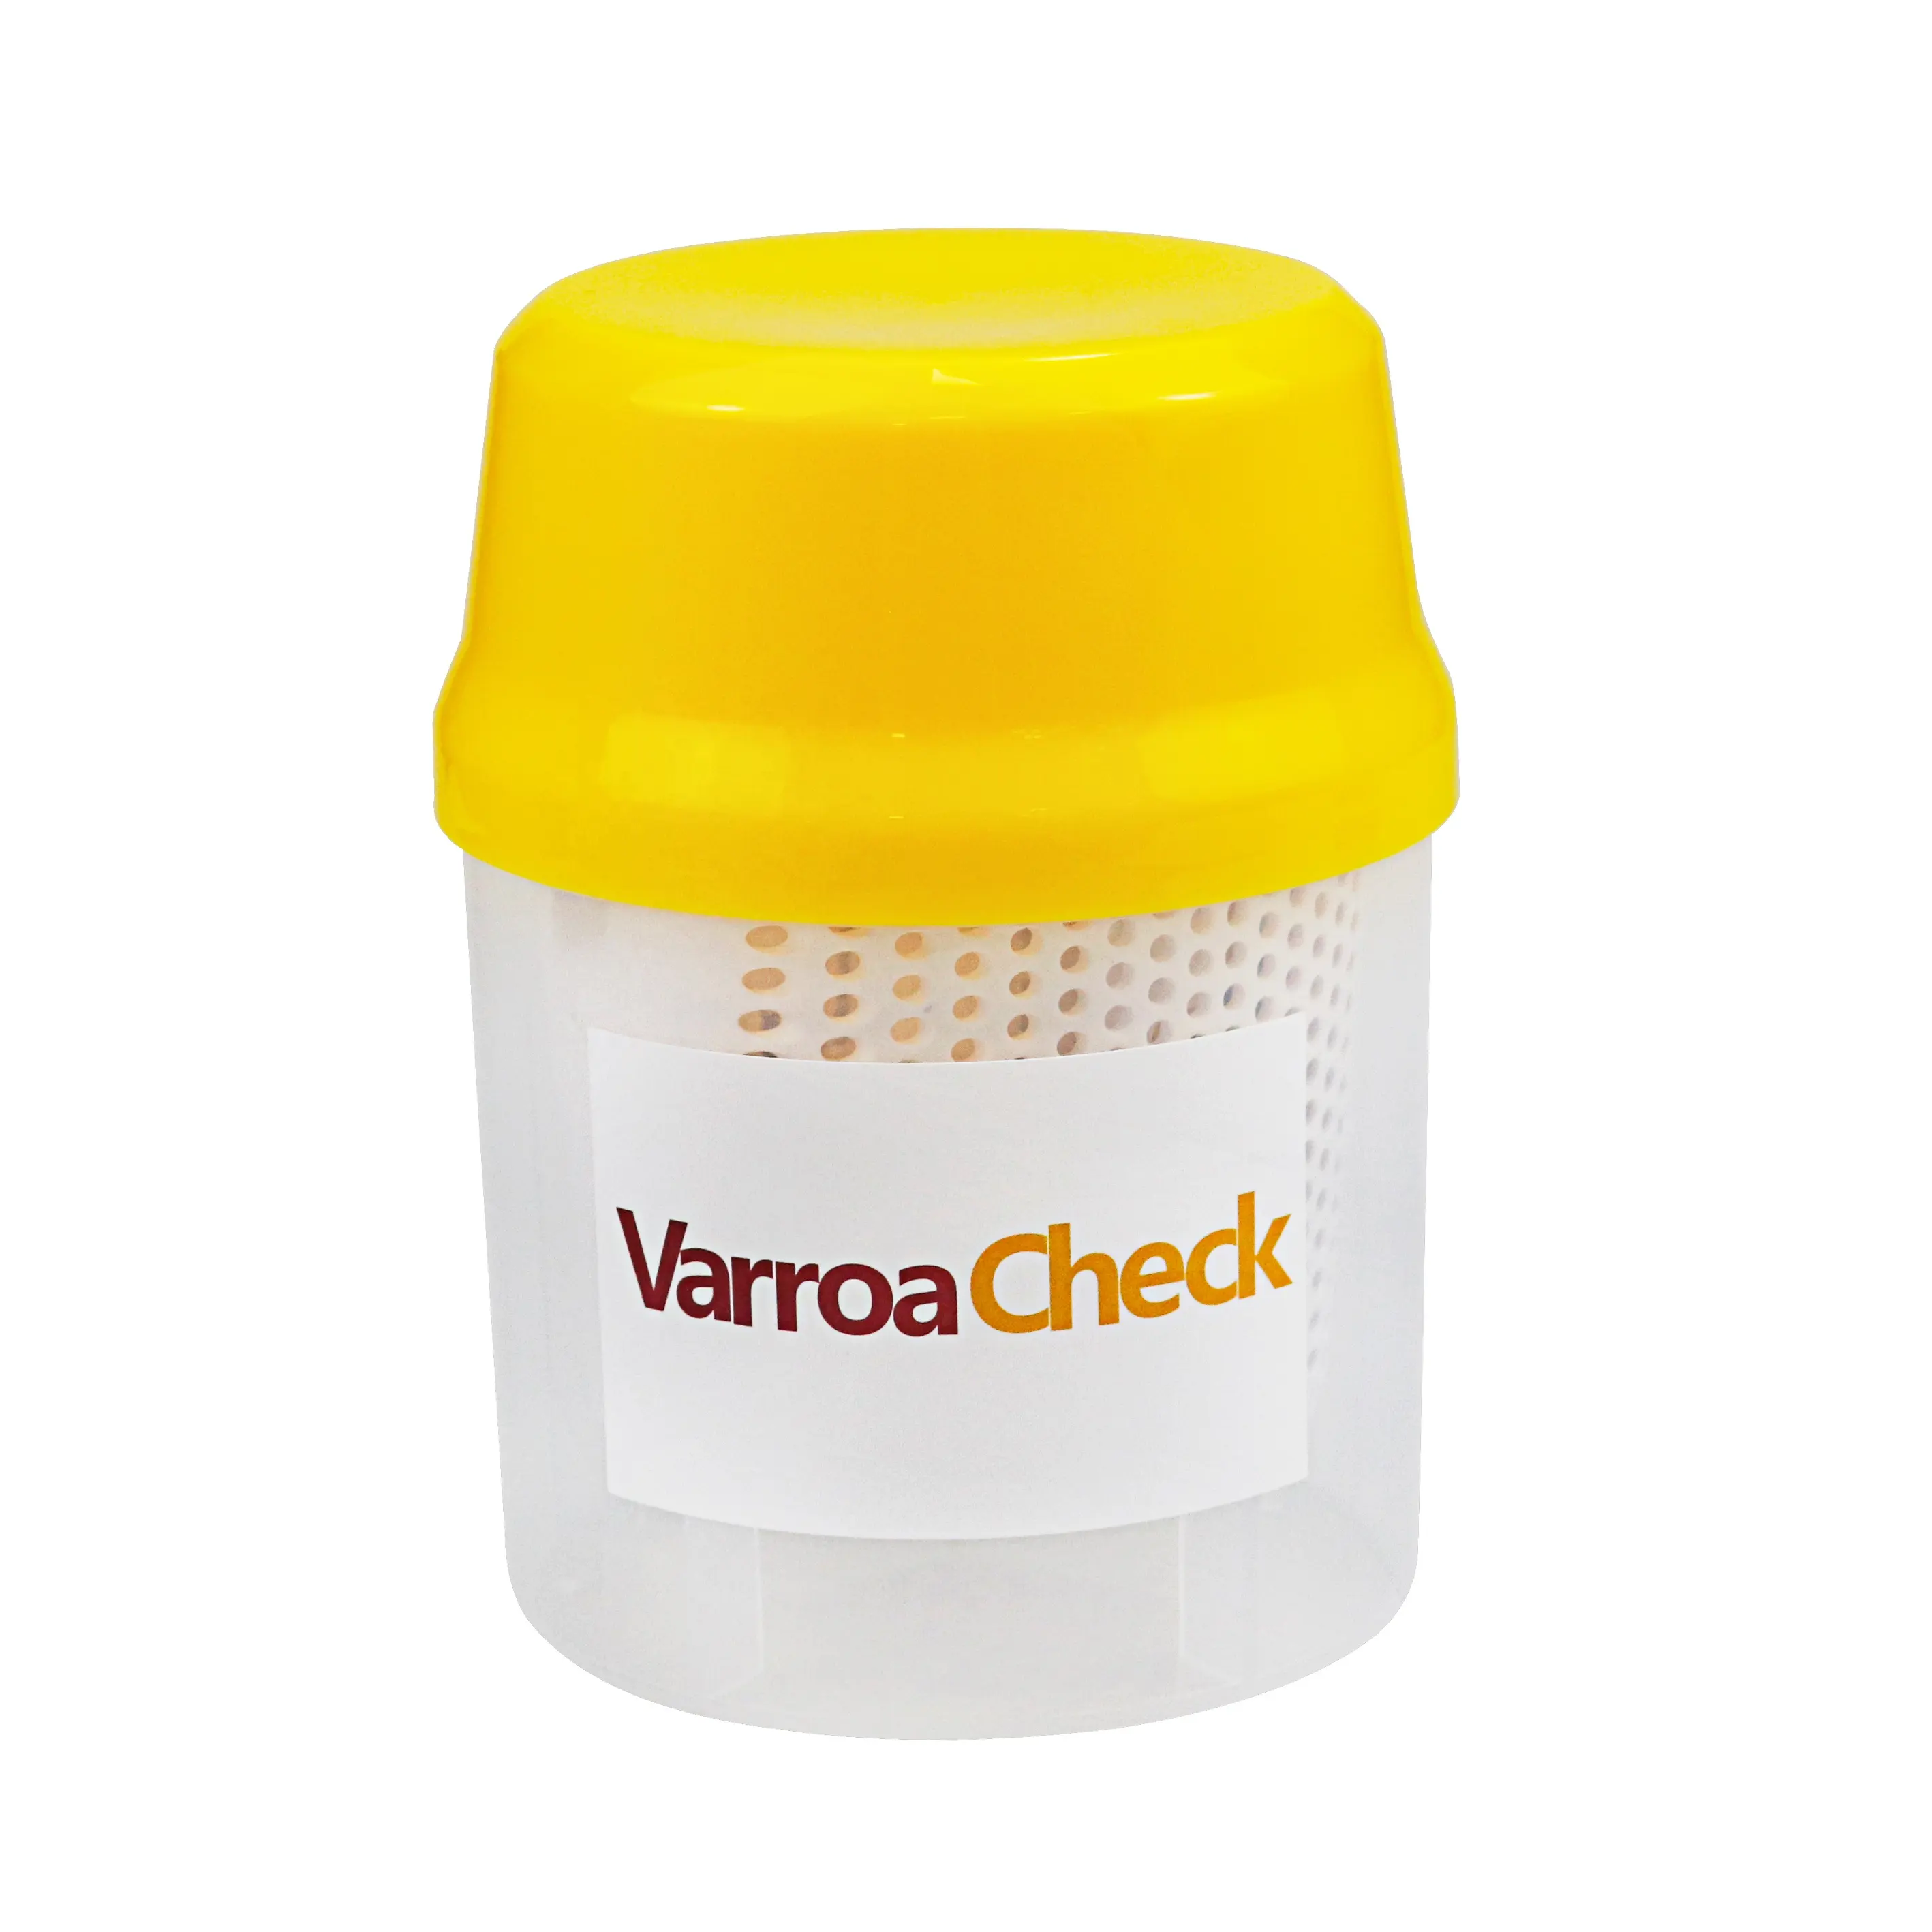 Varroa Shaker Mite Killer Measuring Bottle for Beekeeper Bees Equipment Tool 